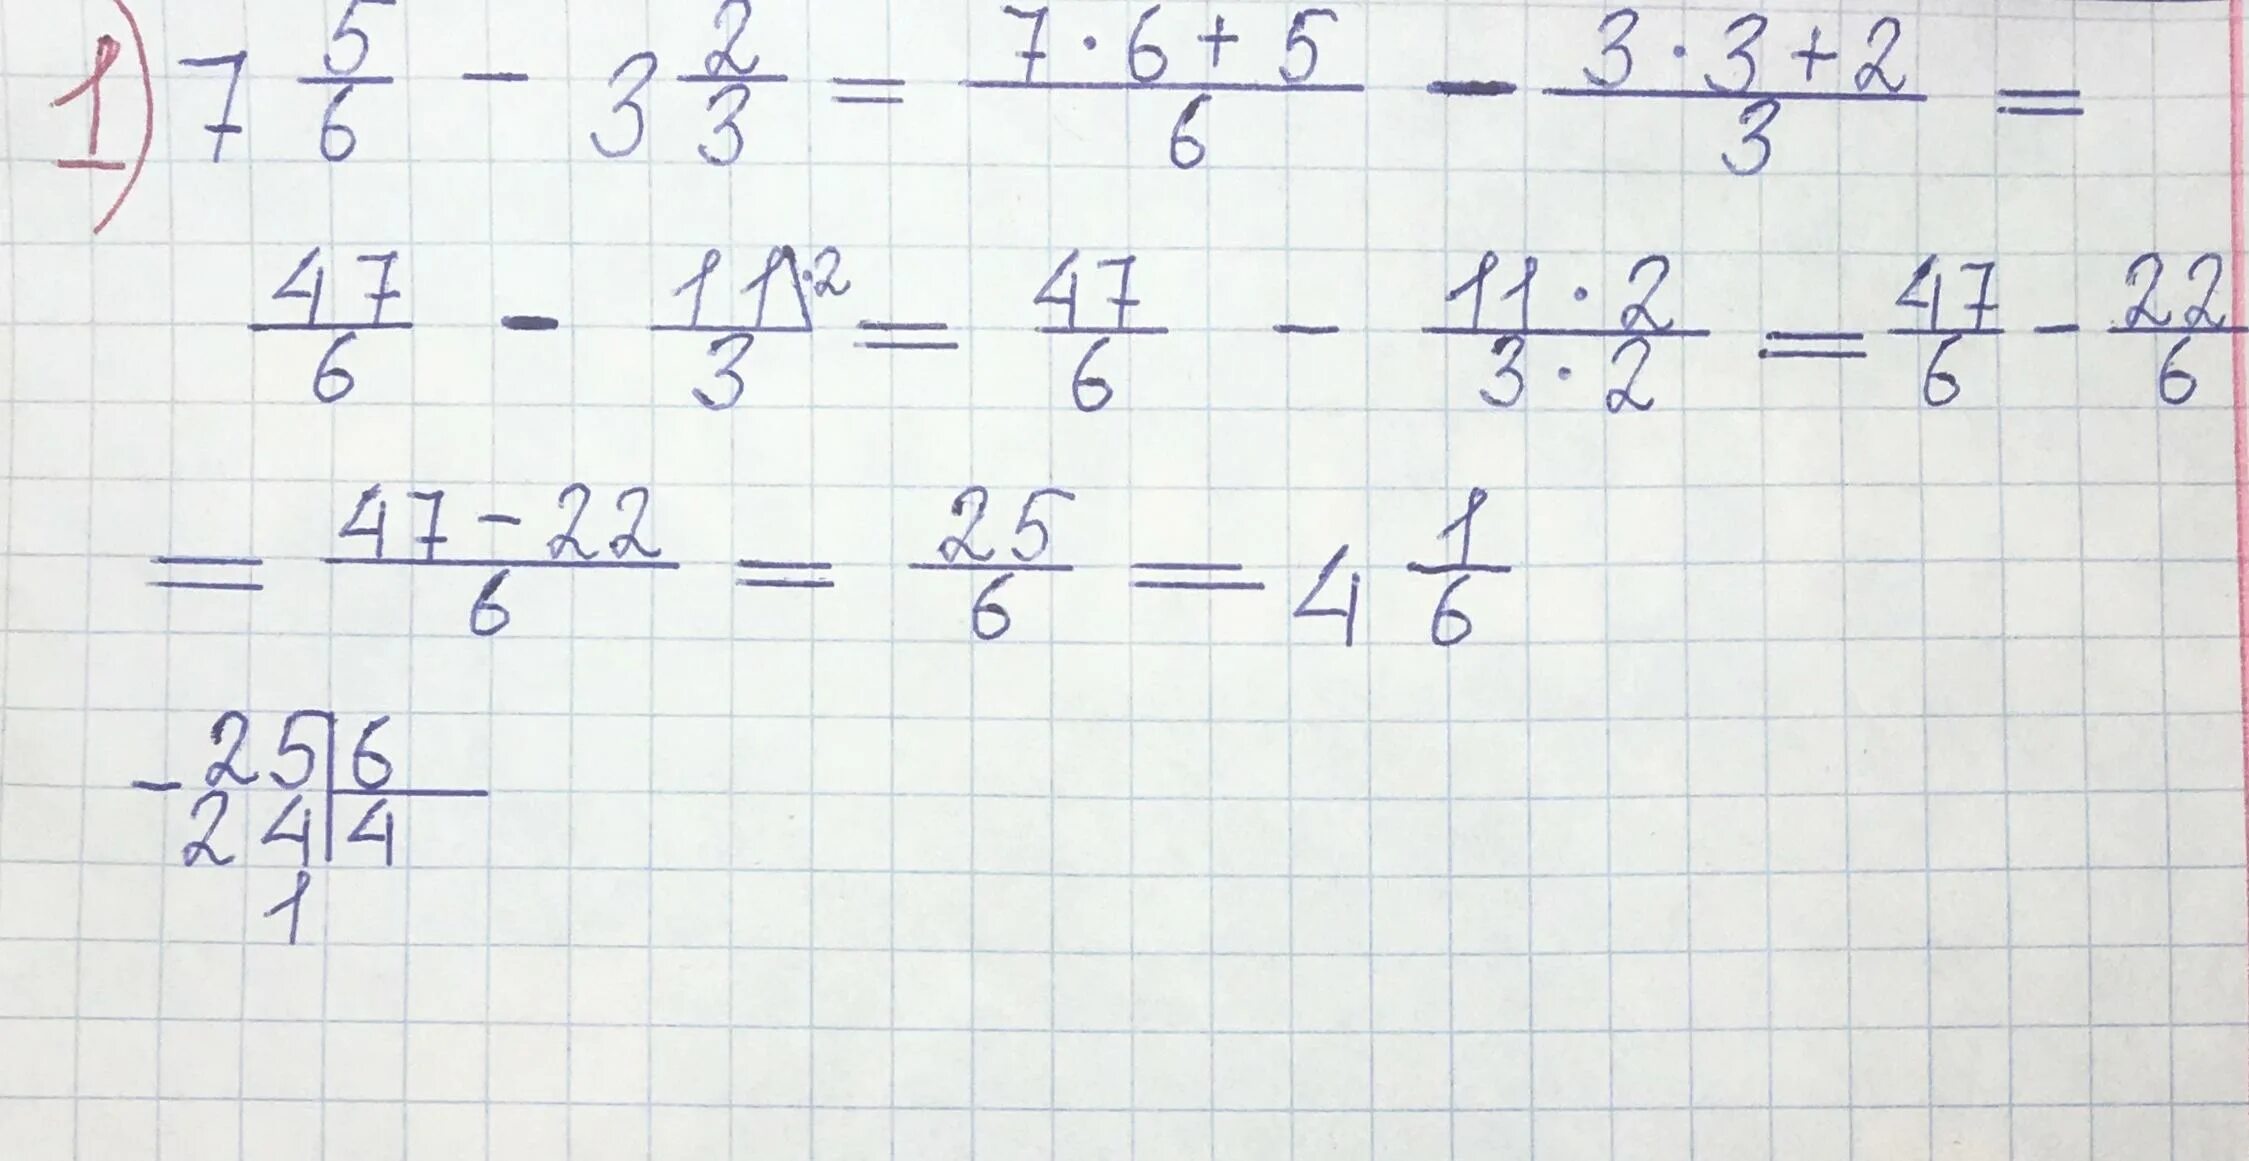 Реши пример 2 3 плюс 1 7. Три восьмых. 7/9 + 1 Целая 2/3 - 5/6. Минус 2 целых 2/3 плюс 6. Три целых пять седьмых.